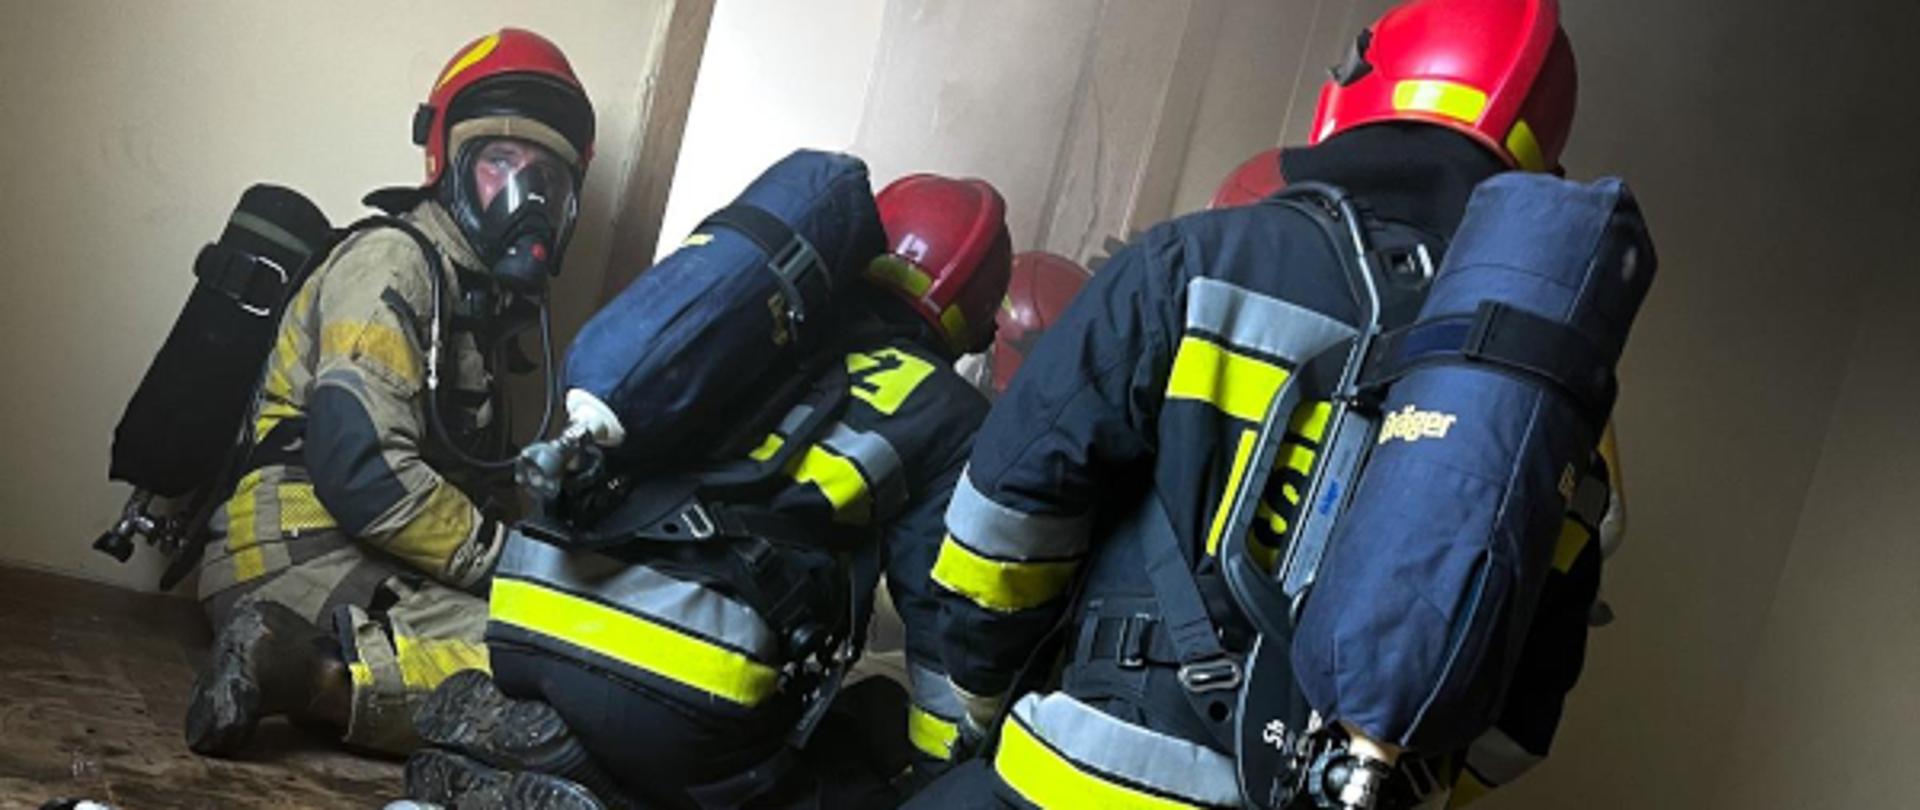 czterech strażaków ubranych w ubrania specjalne przygotowuje się do wejścia do pomieszczenia objętego pożarem, z drzwi wydobywa się dym